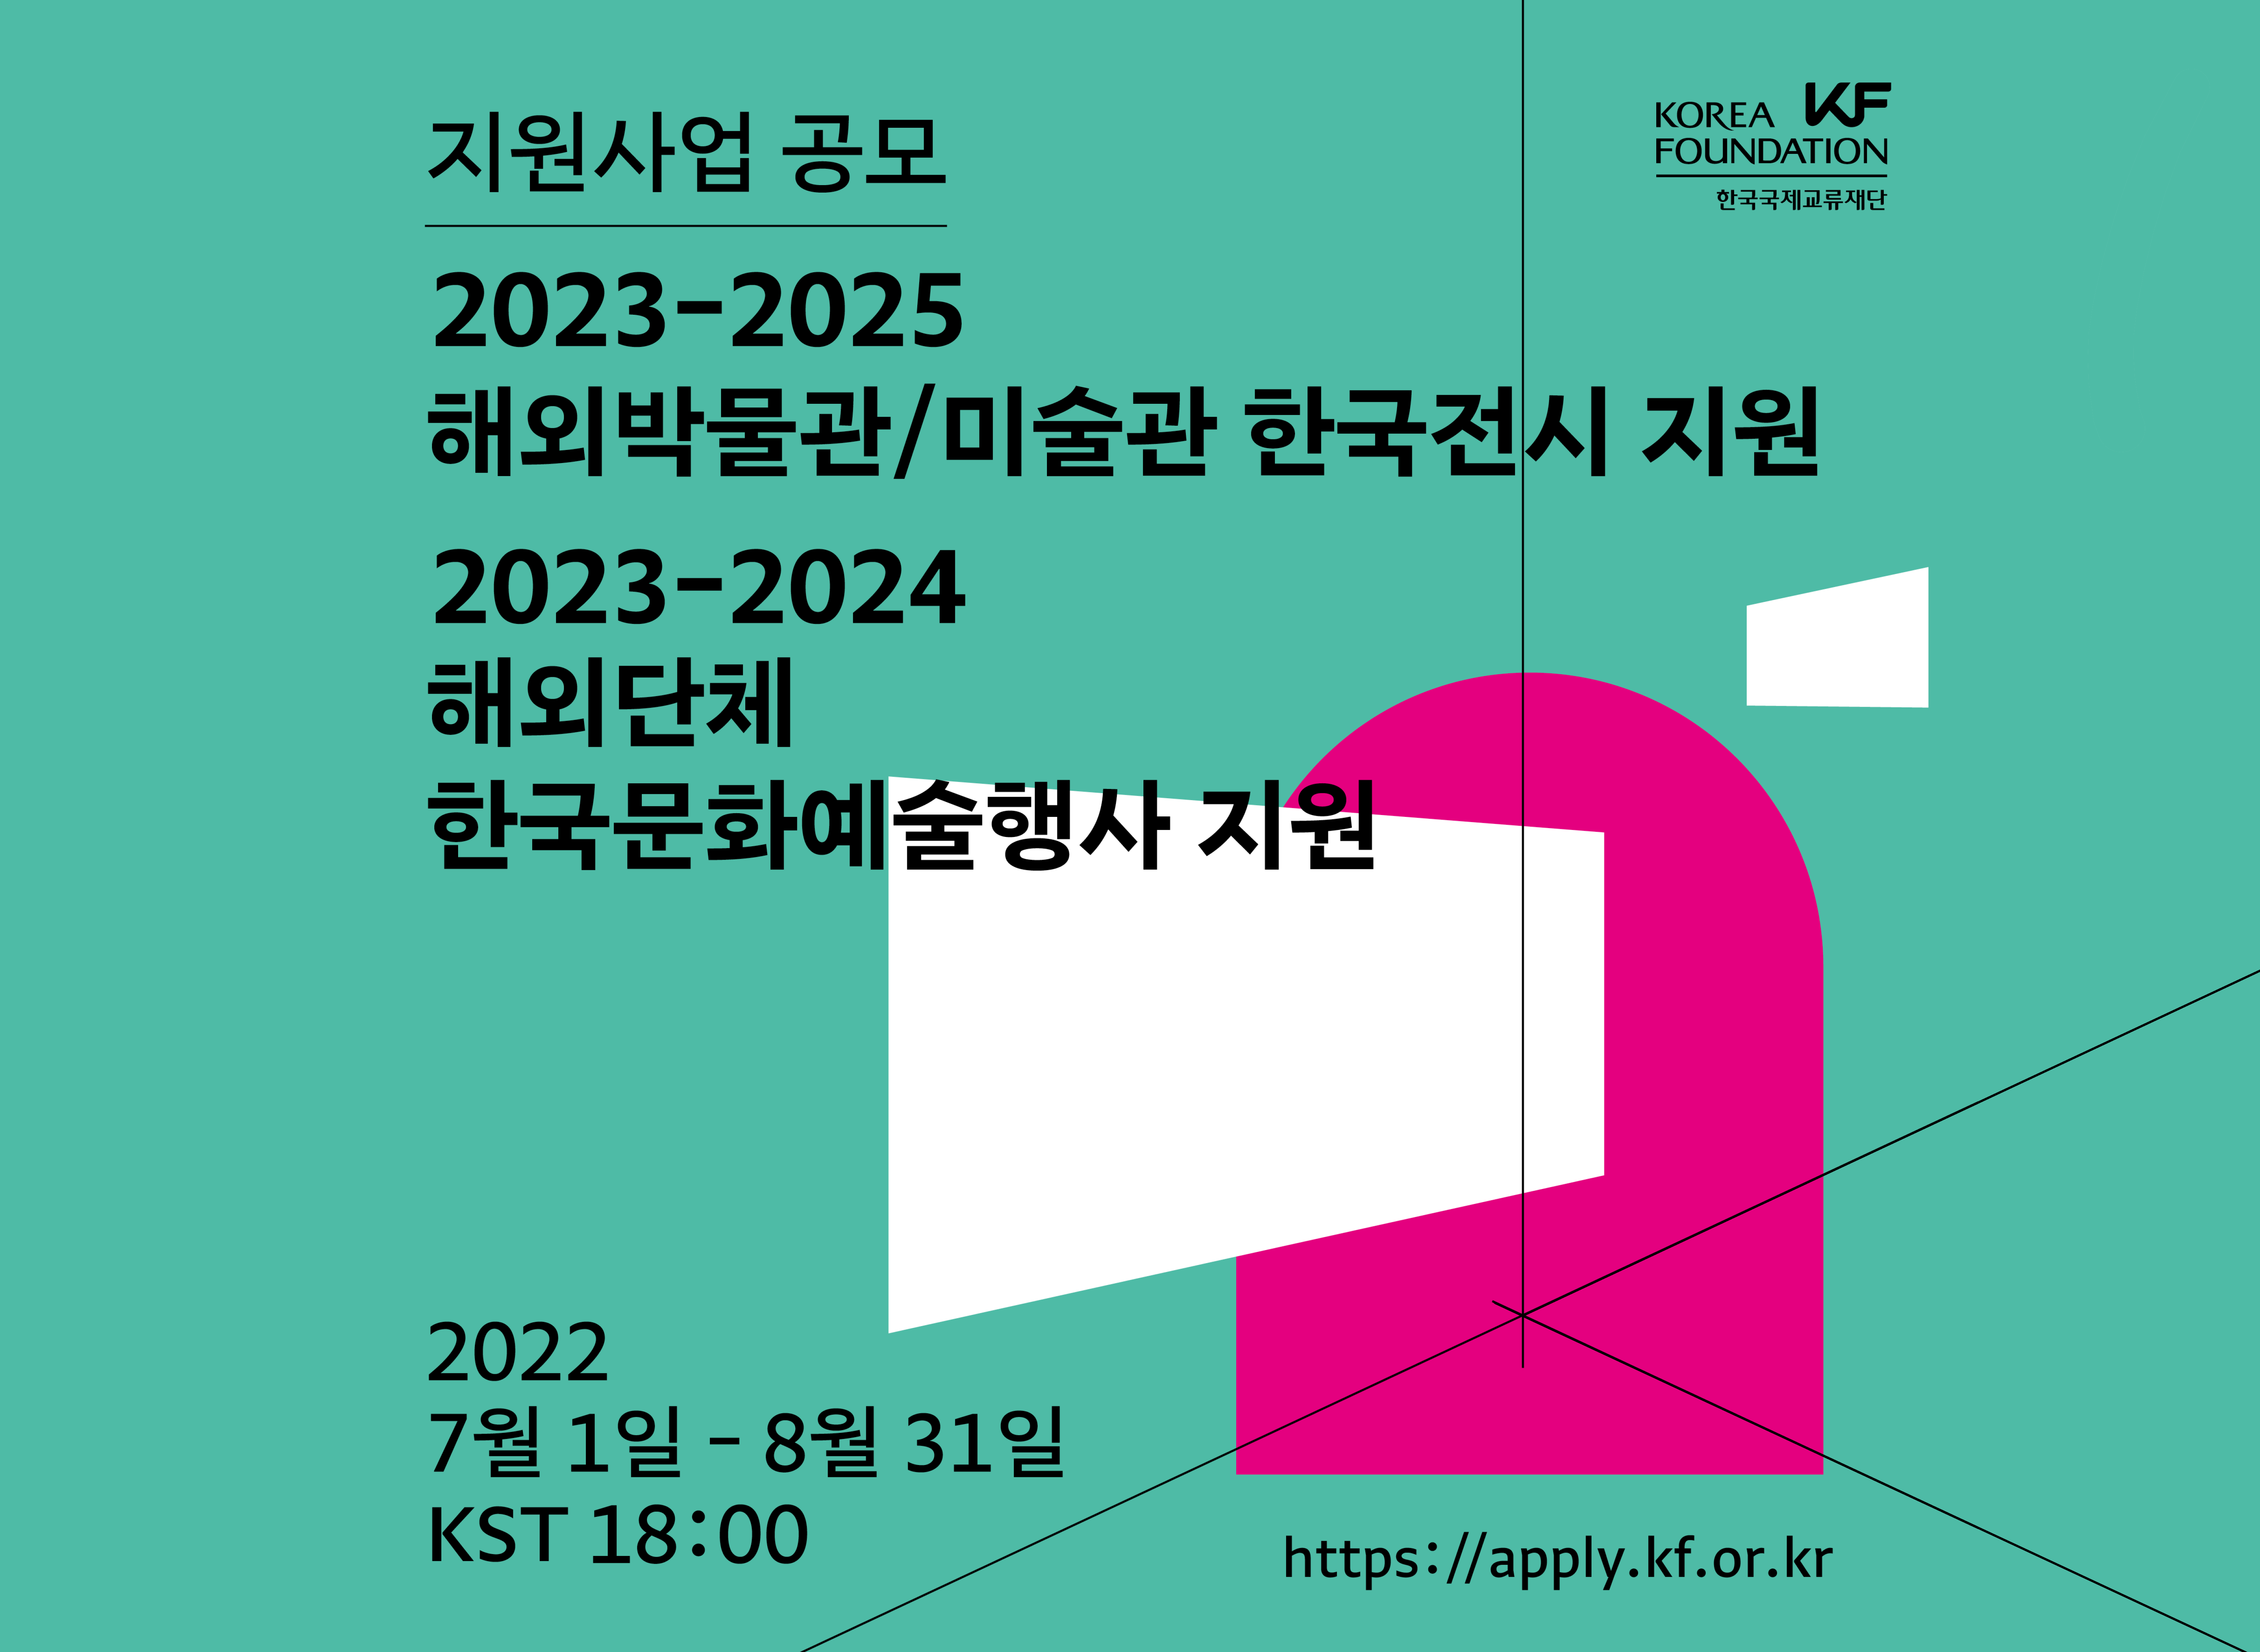 [공모안내]2023-2025 해외박물관/미술관 한국전시지원 및 2023-2024 해외단체 한국문화예술행사 지원